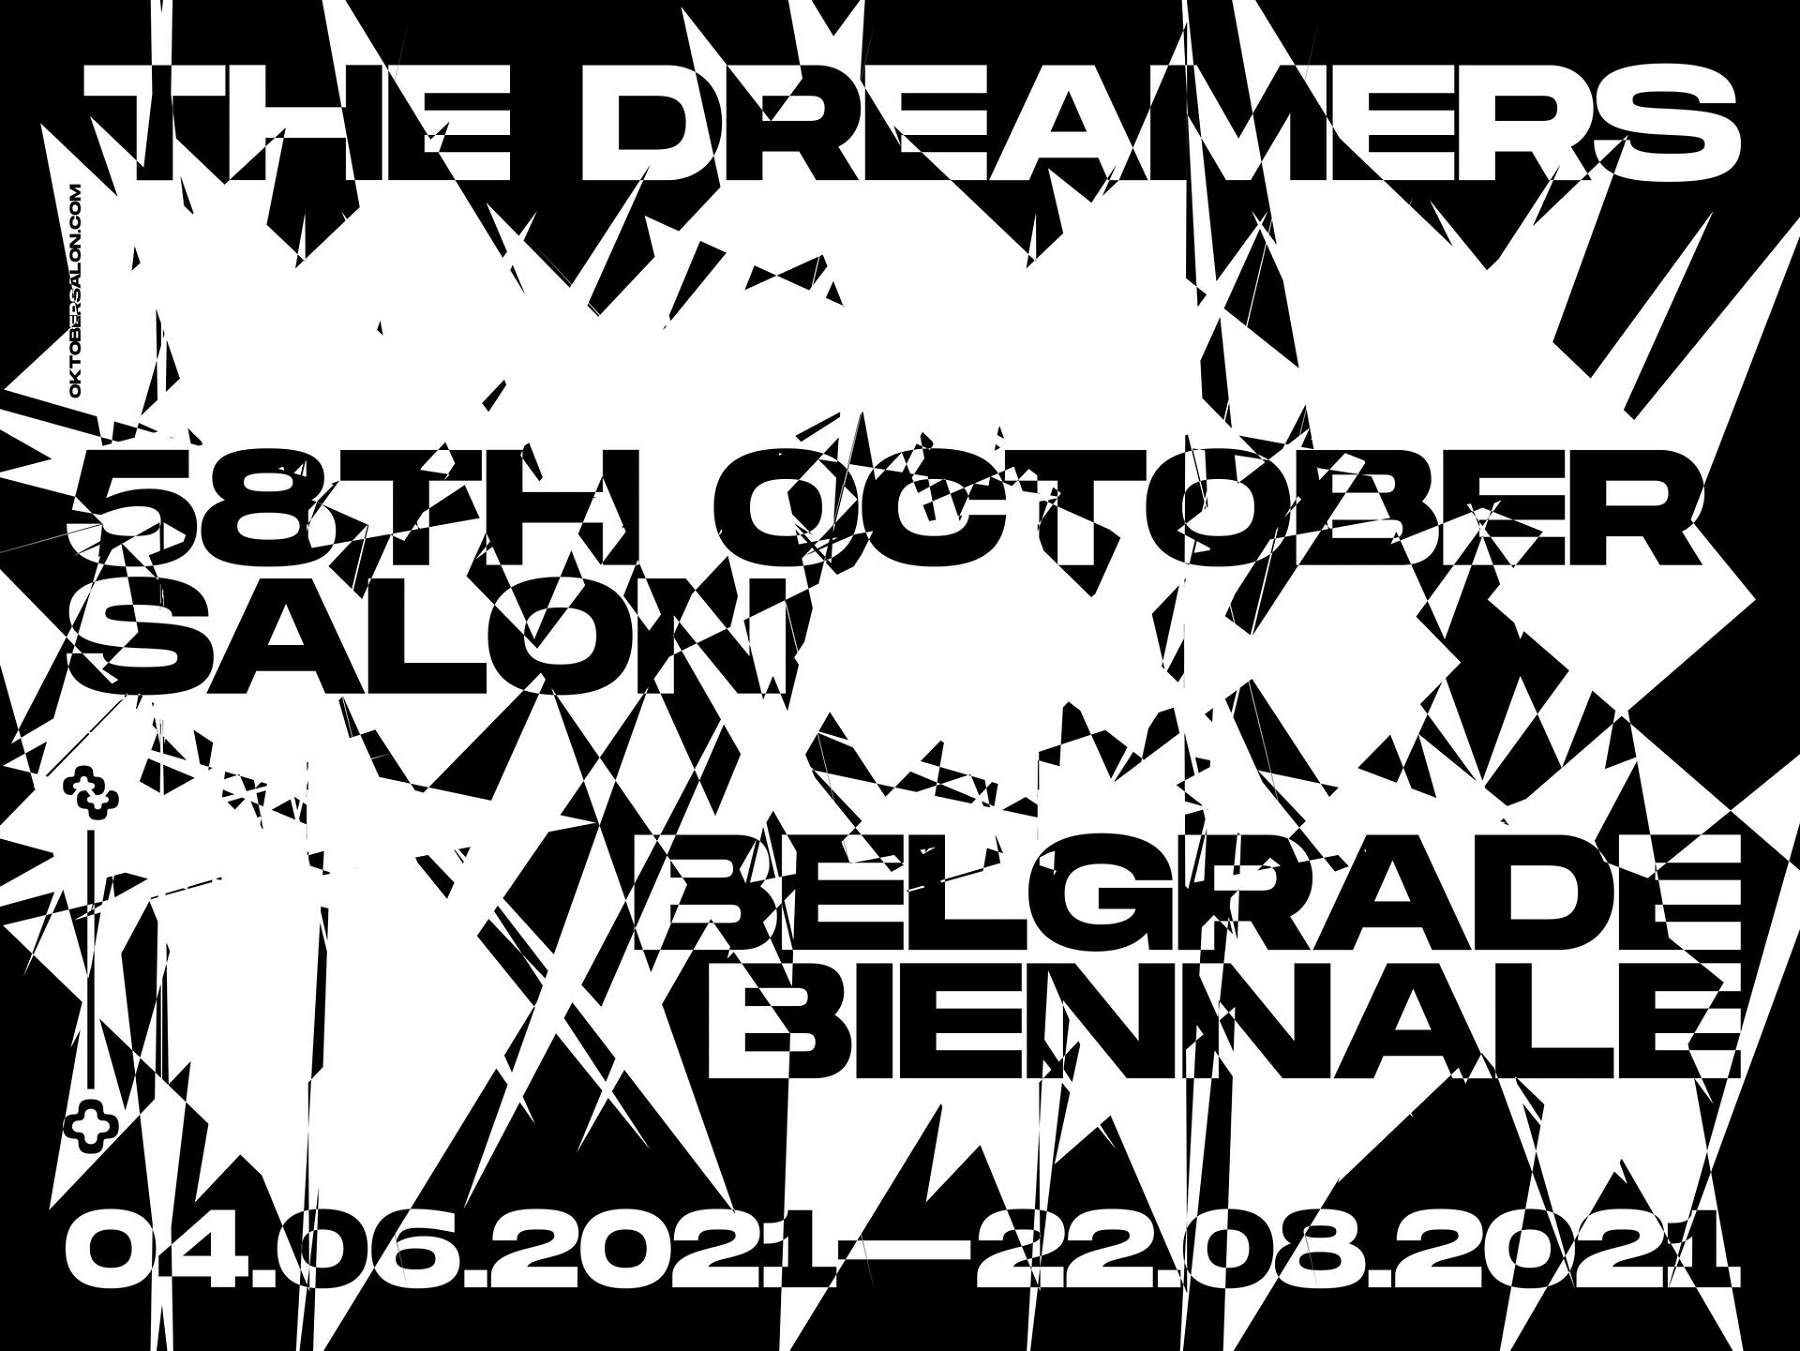 Une exposition sur les rêves : la 58e Biennale de Belgrade débute cet été